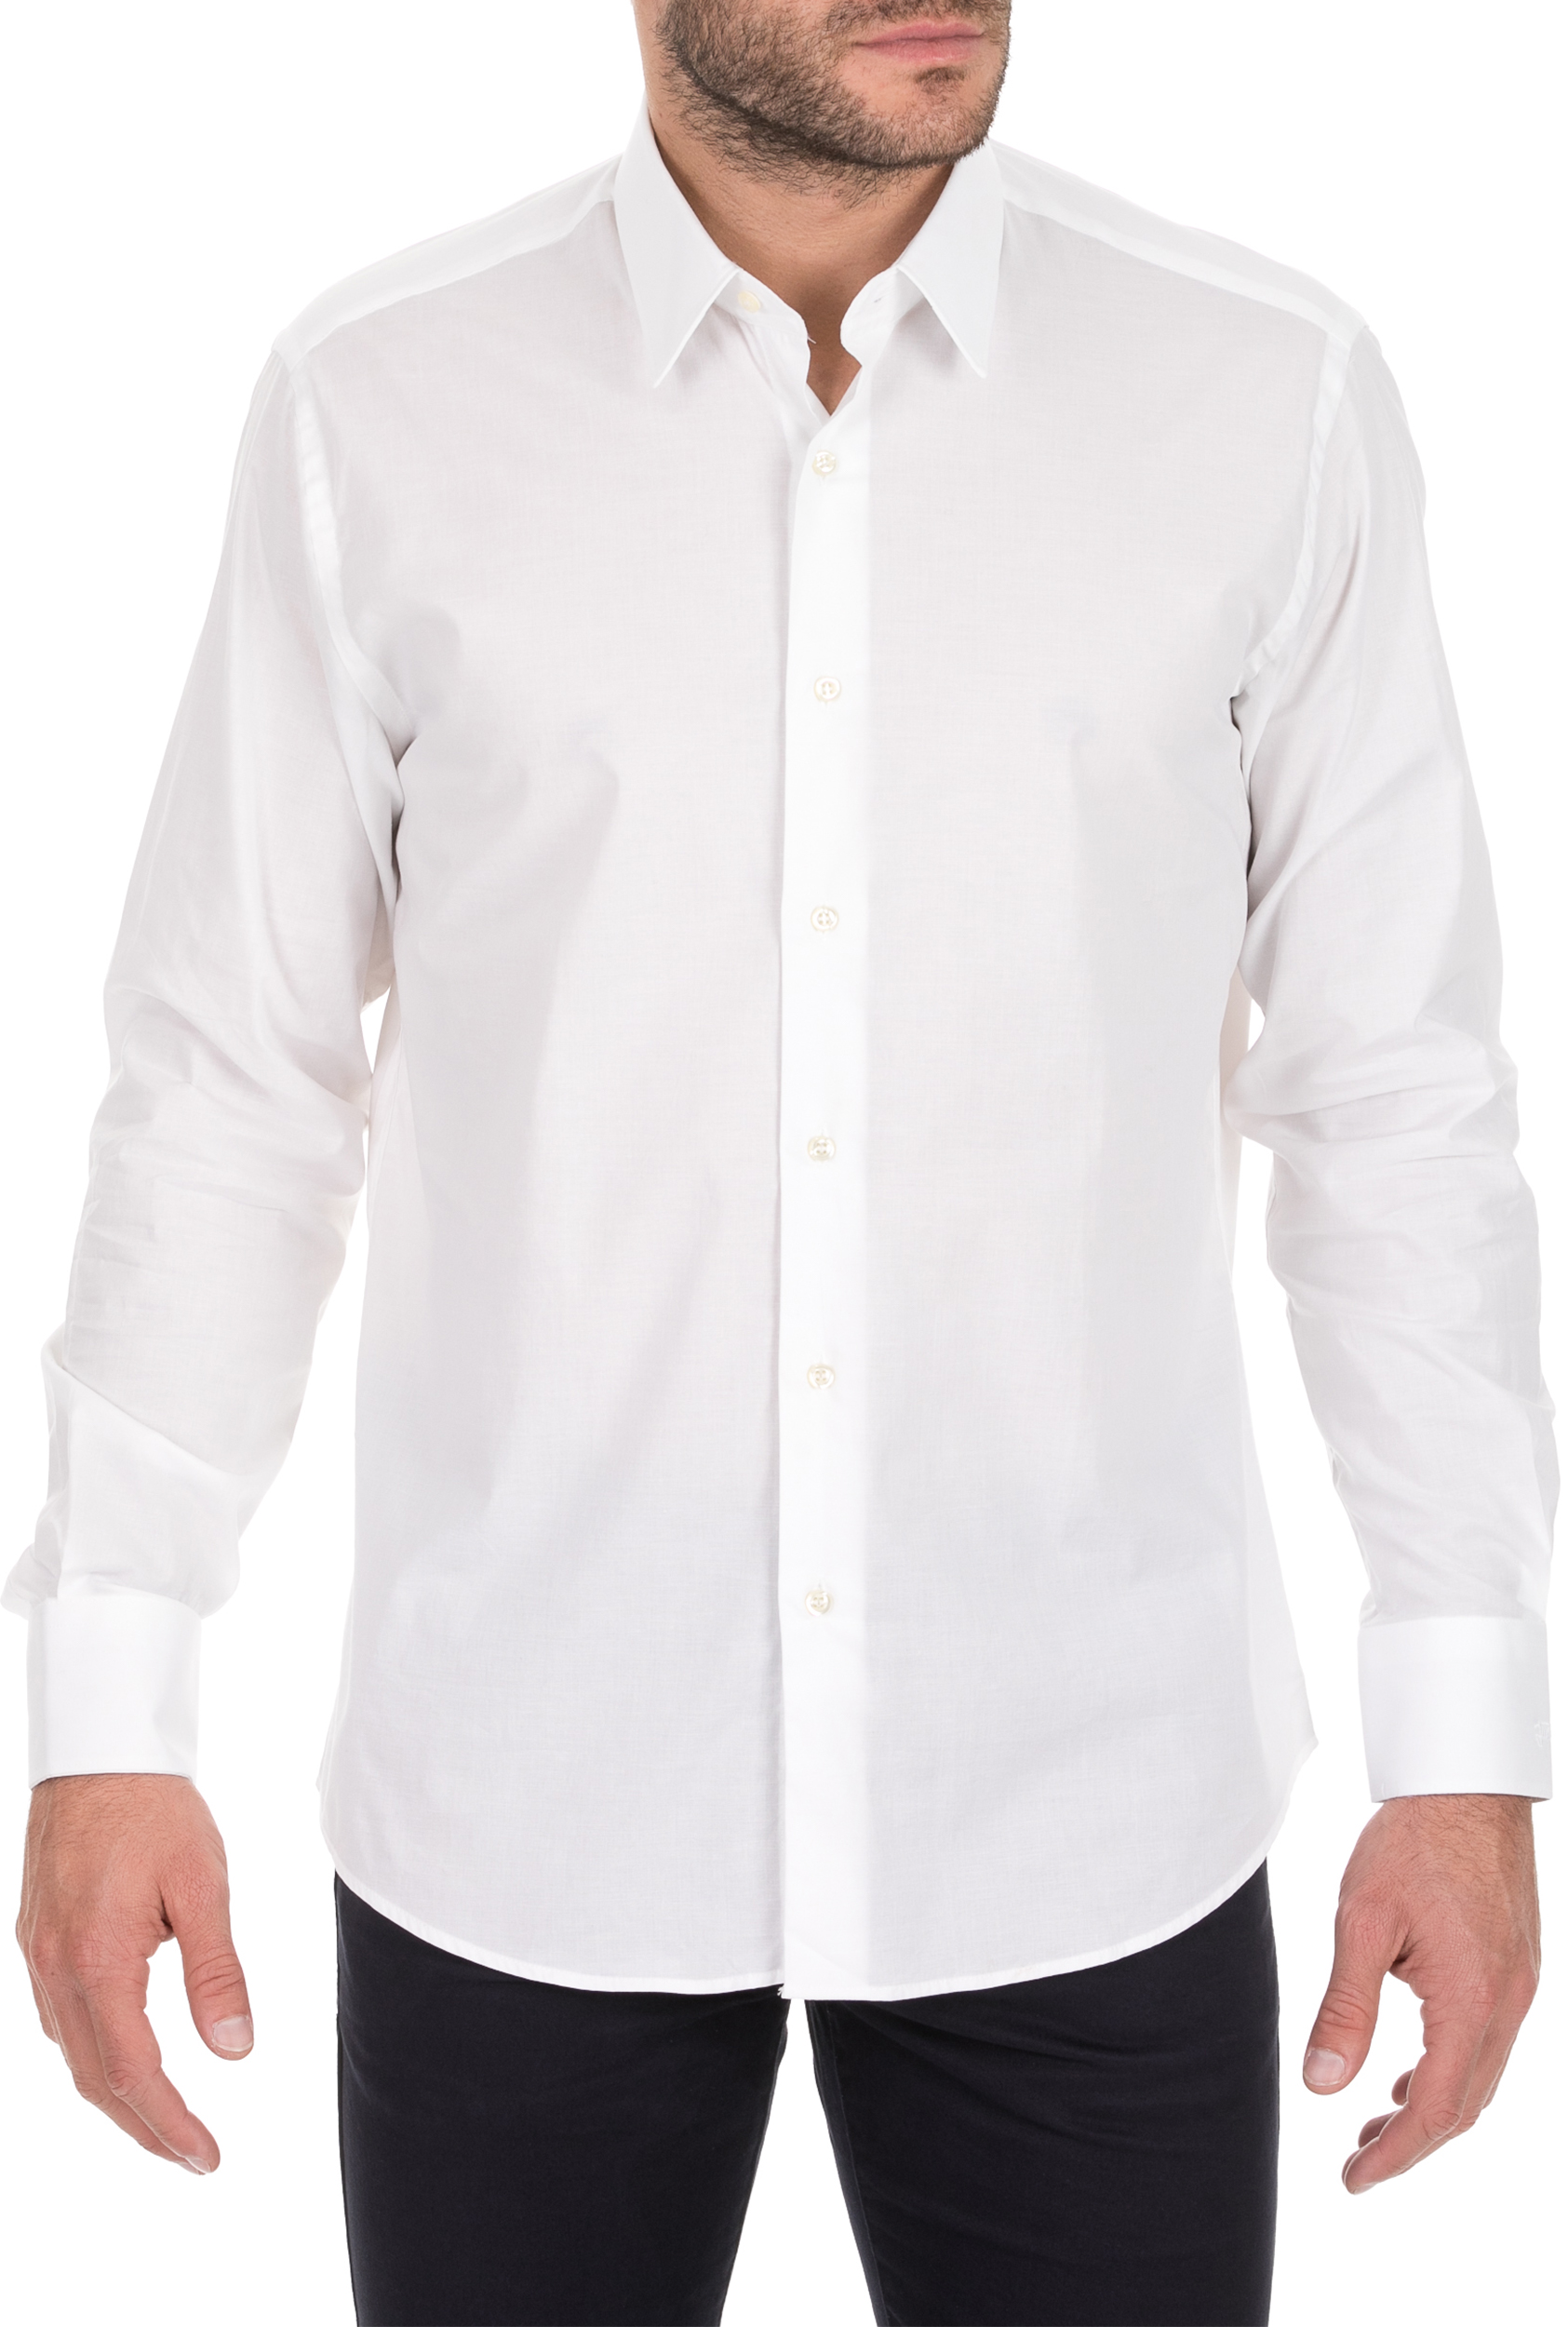 Ανδρικά/Ρούχα/Πουκάμισα/Μακρυμάνικα JUST CAVALLI - Ανδρικό πουκάμισο JUST CAVALLI λευκό